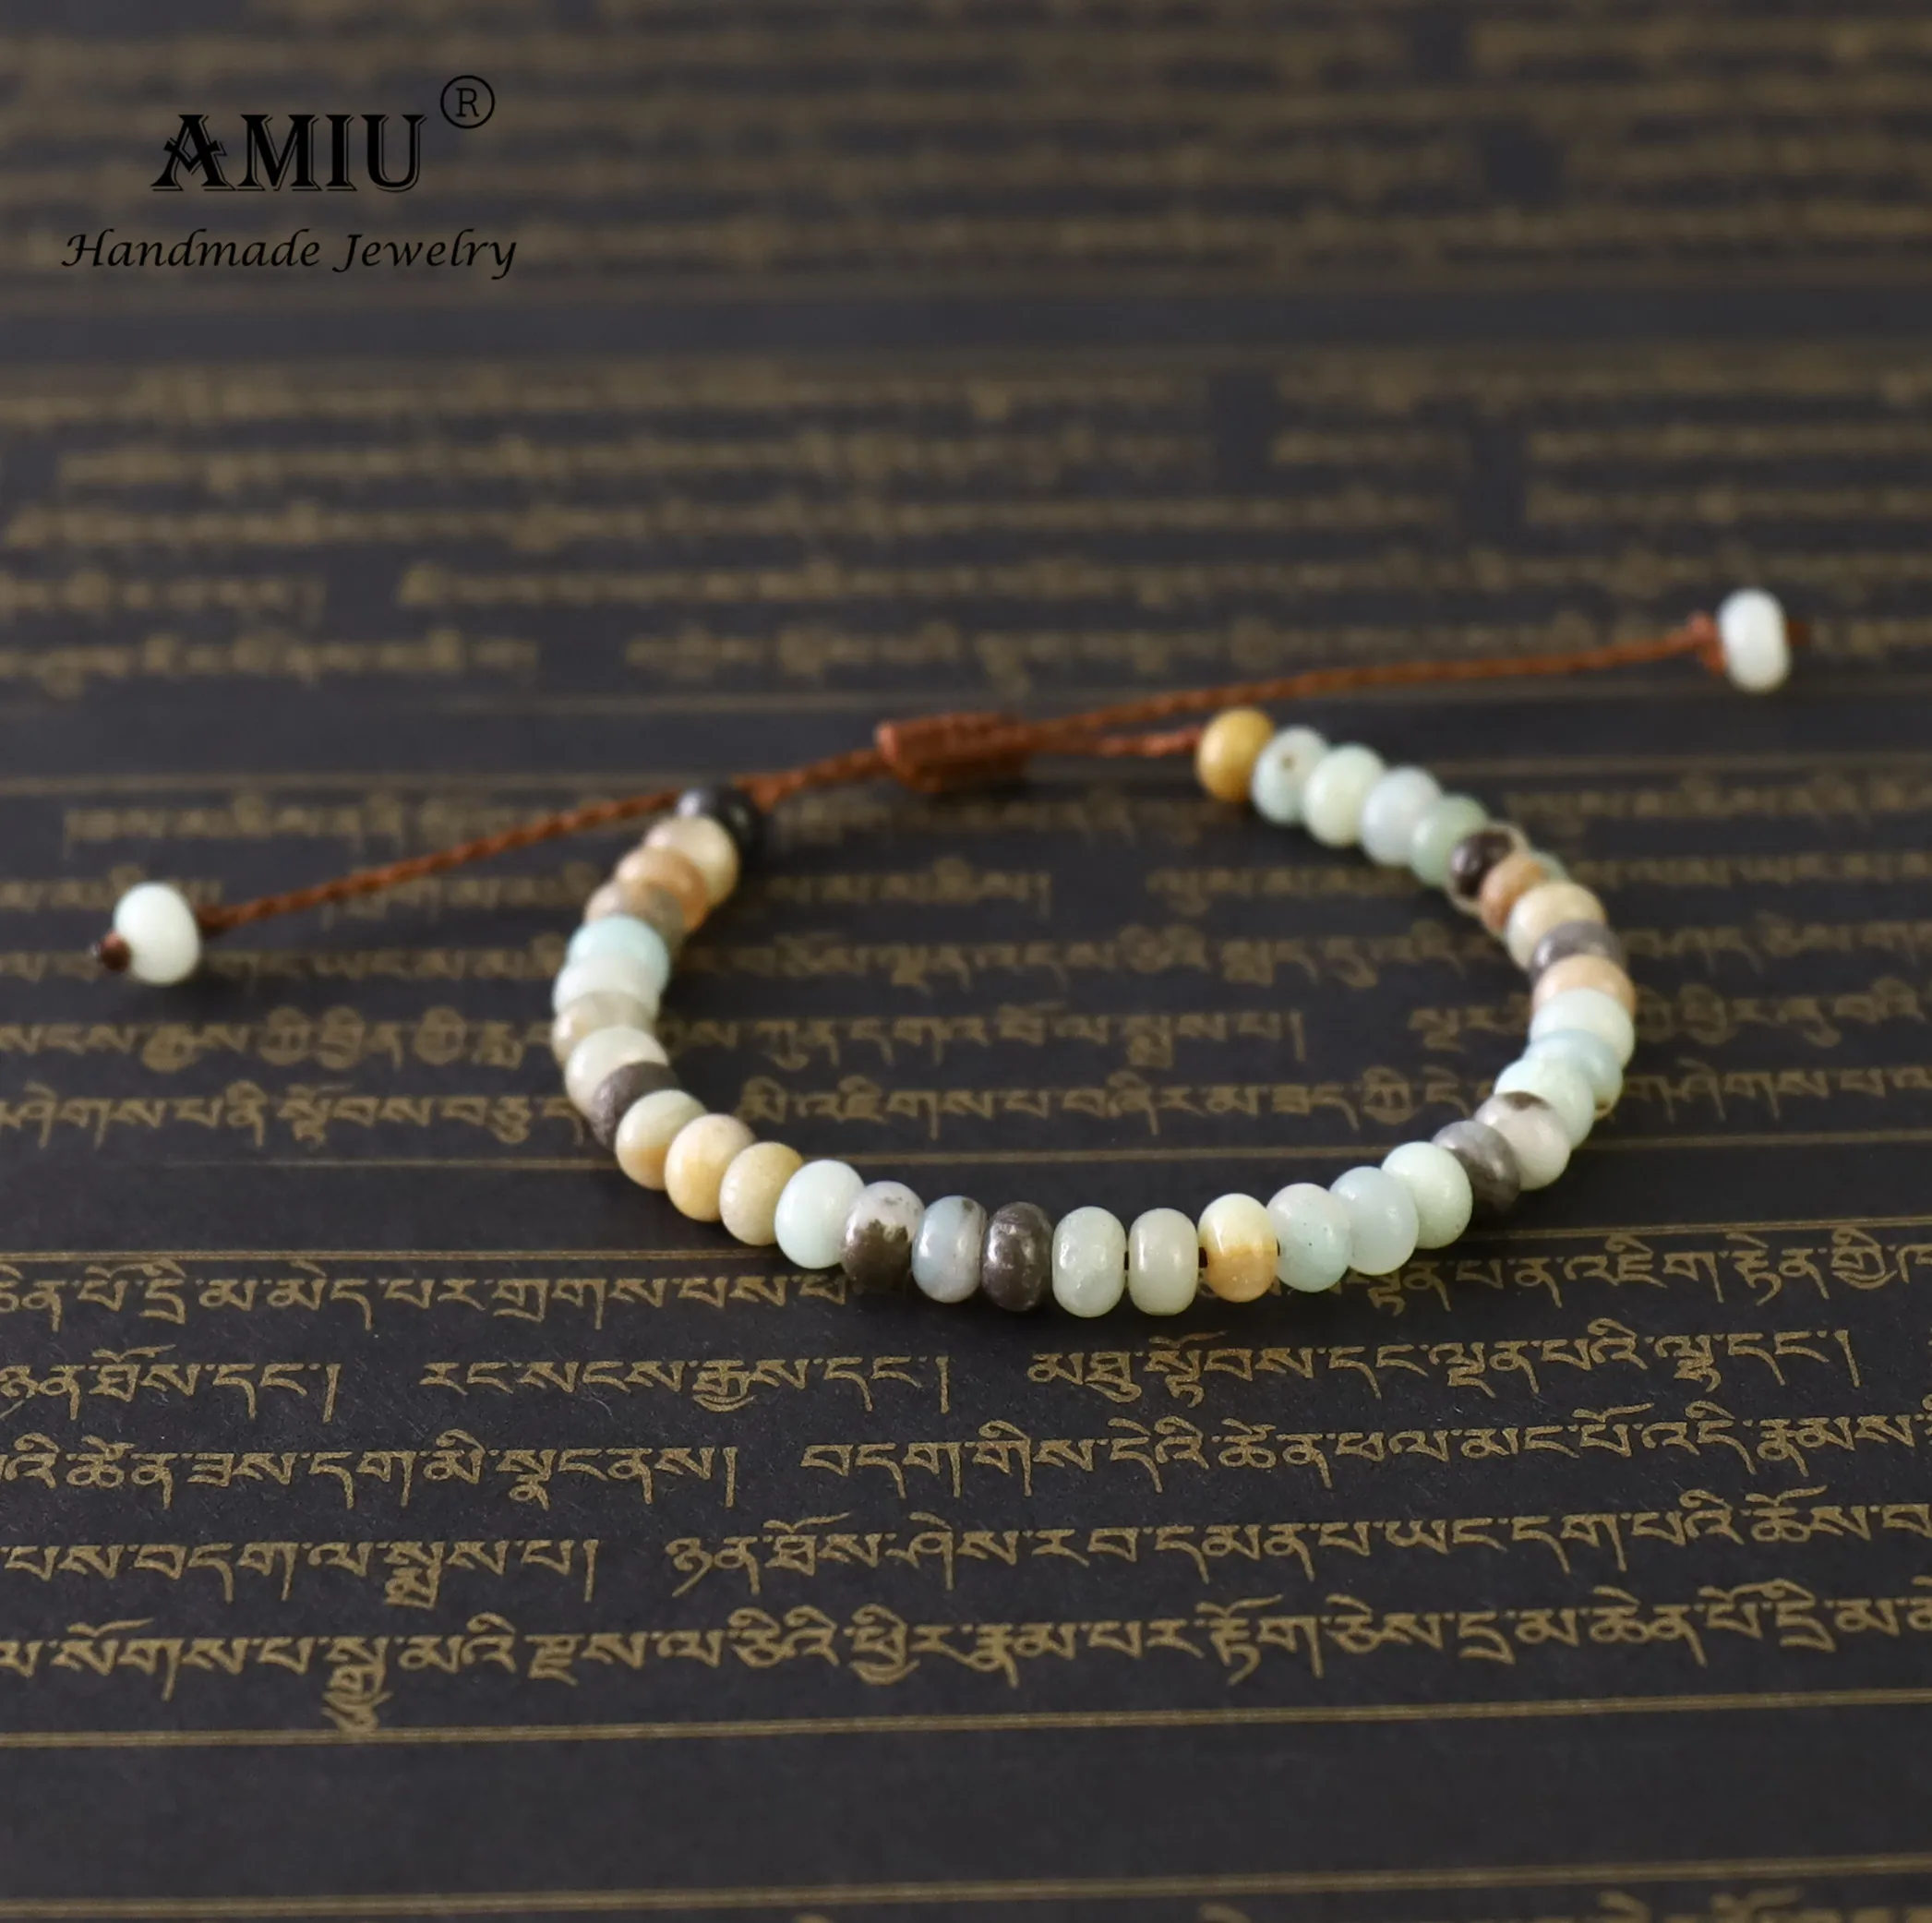 AMIU ручной работы Для Мужчин's Натуральный камень браслет из бисера Amazon stone бусины воск браслет из нитей